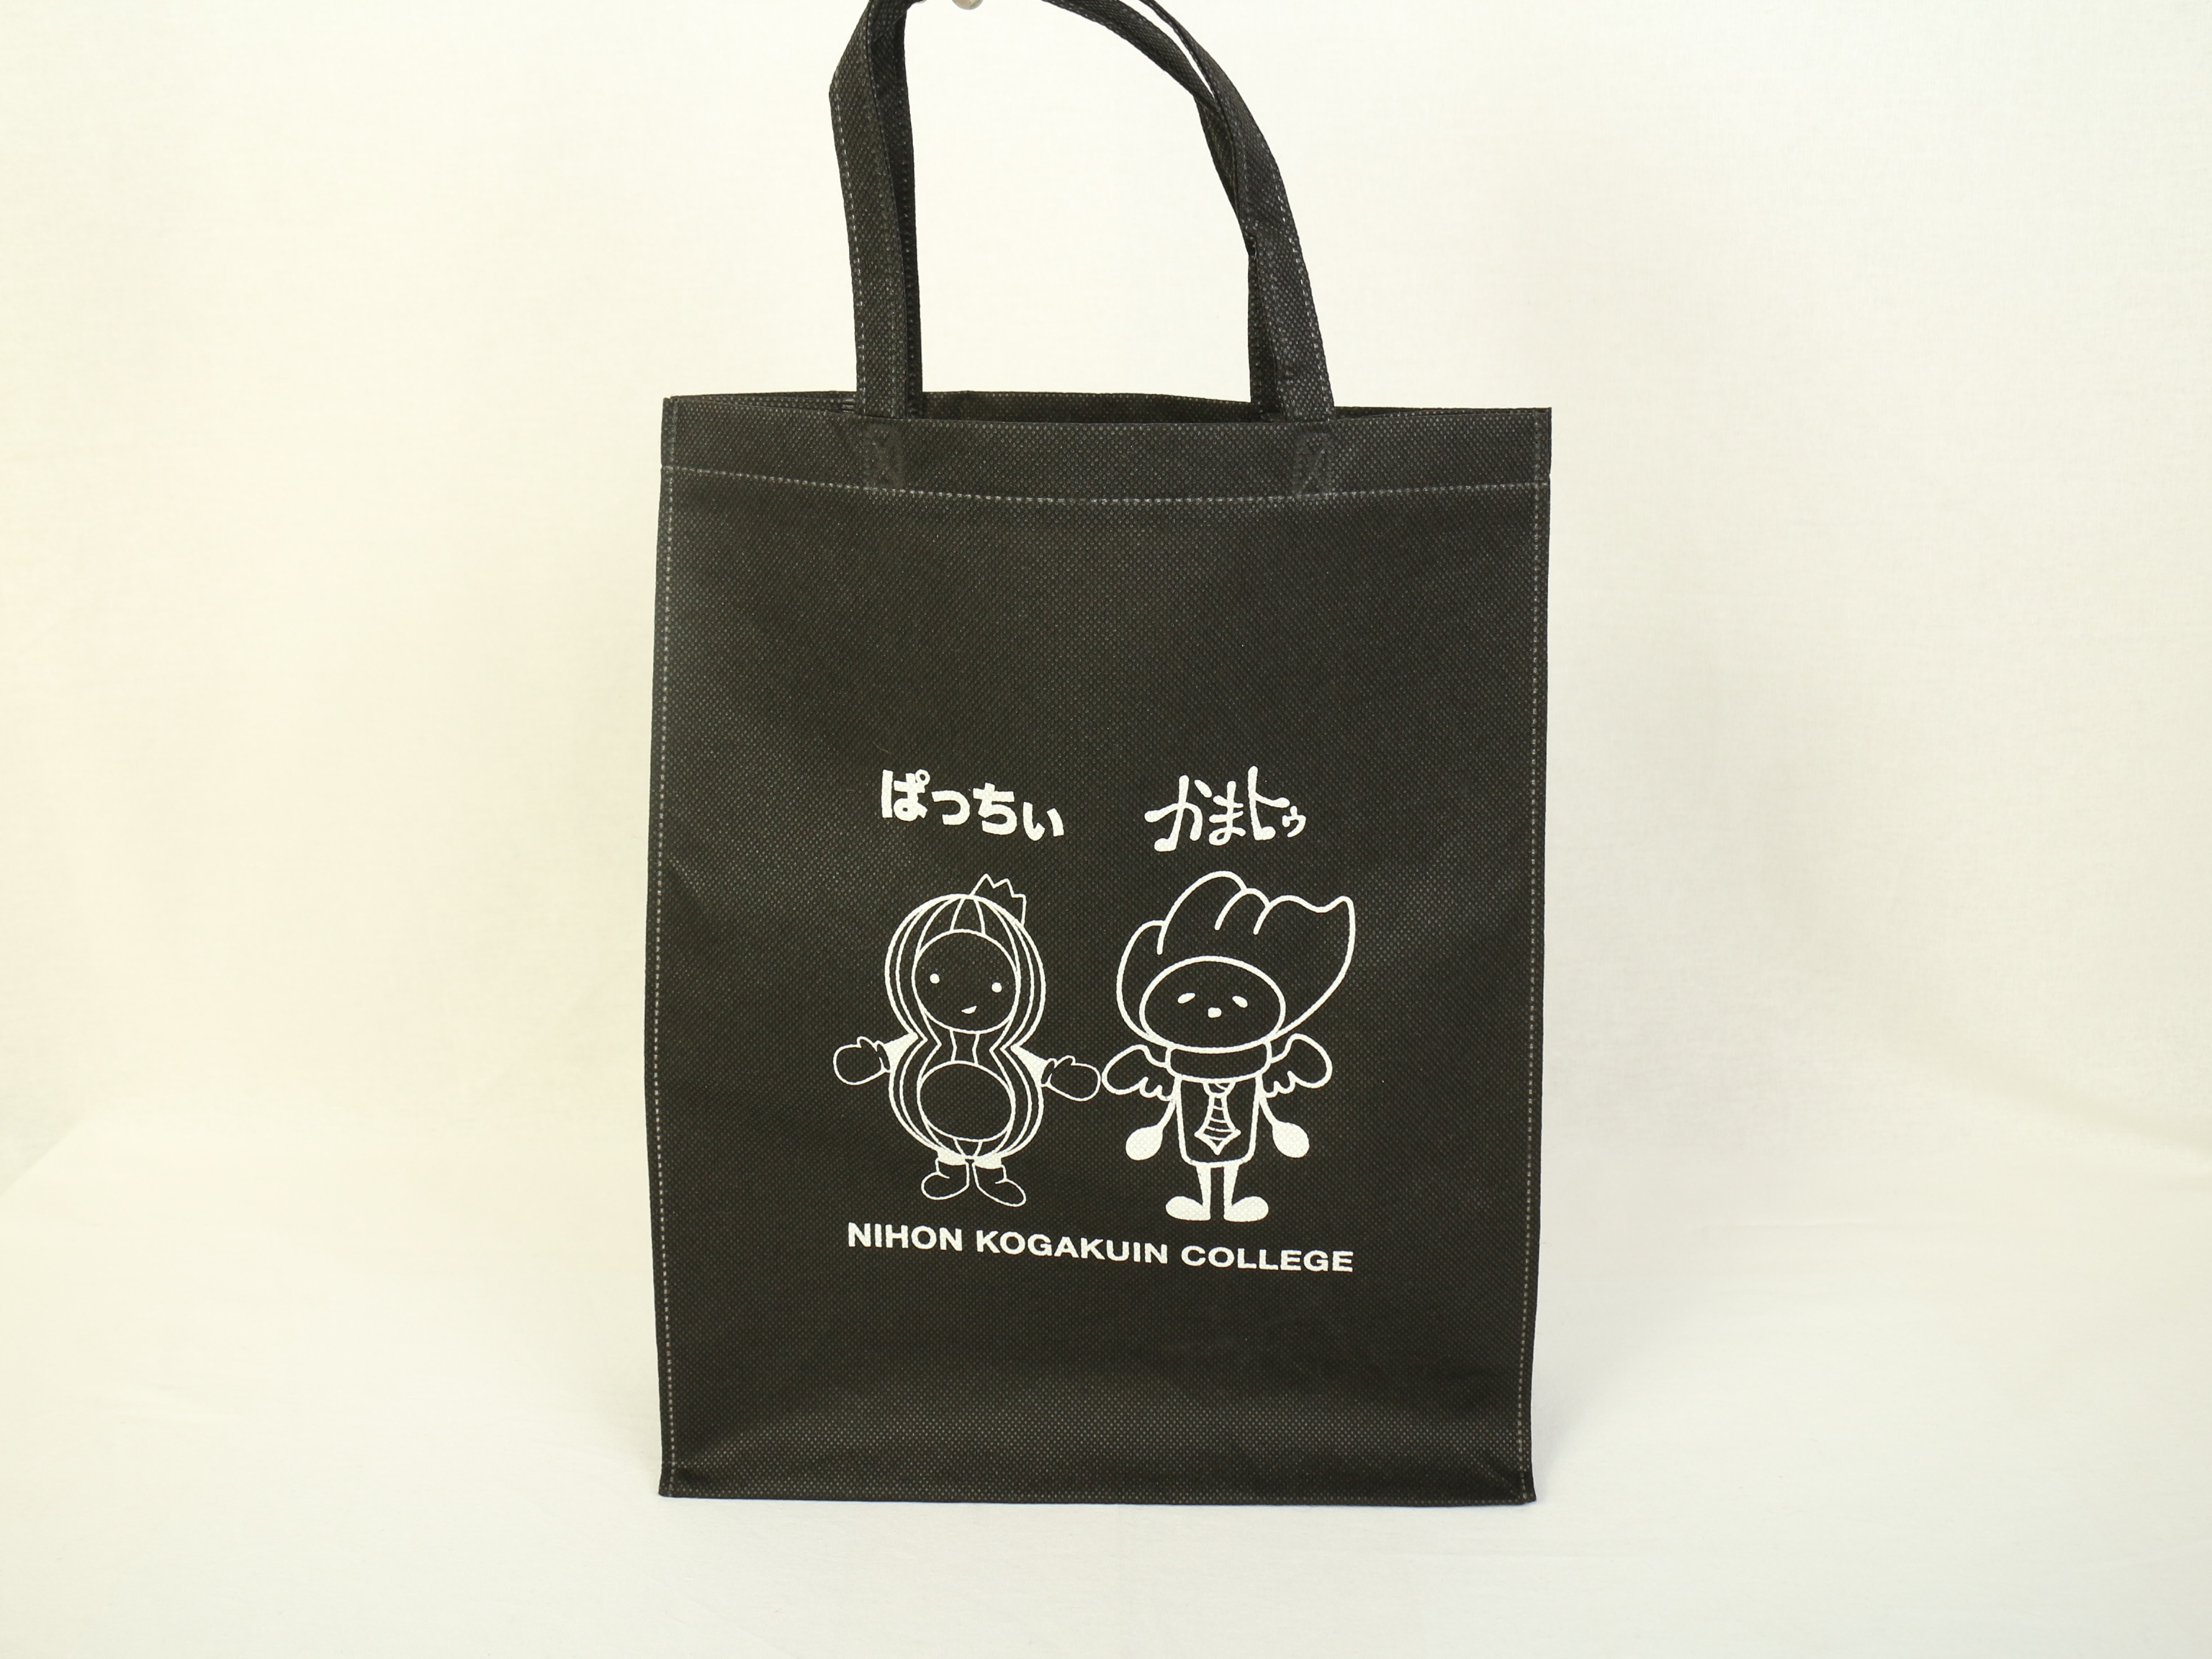 東京の専門学校様のキャラクターを印刷したオリジナル不織布